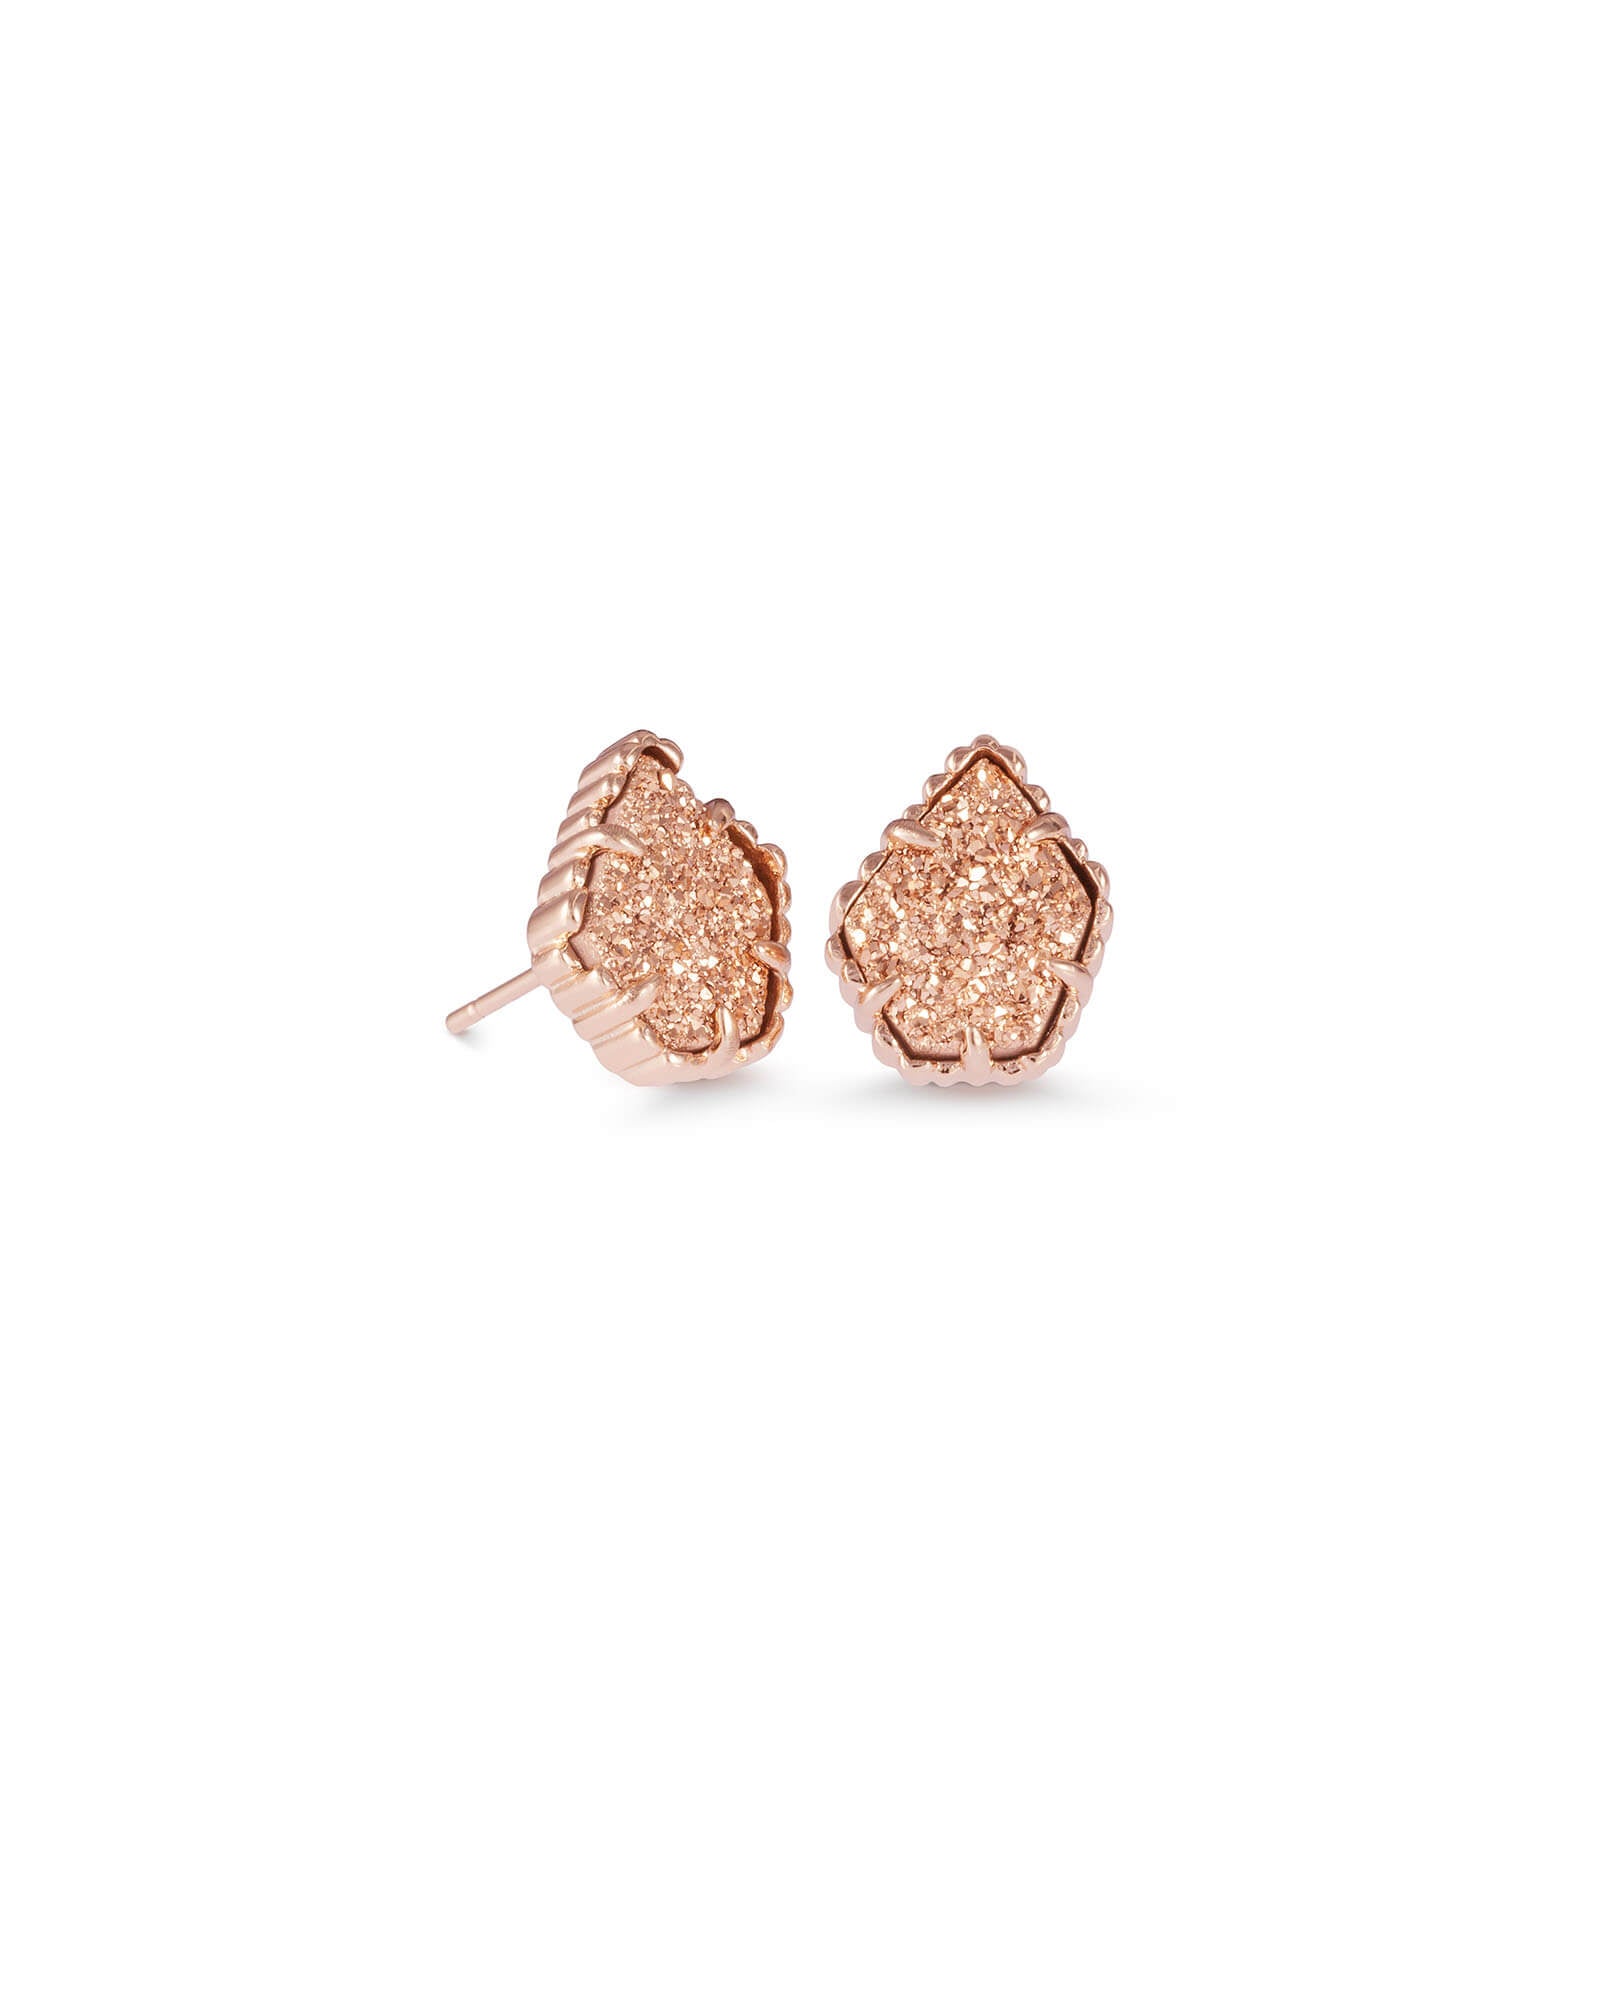 Tessa Stud Earrings in Rose Gold